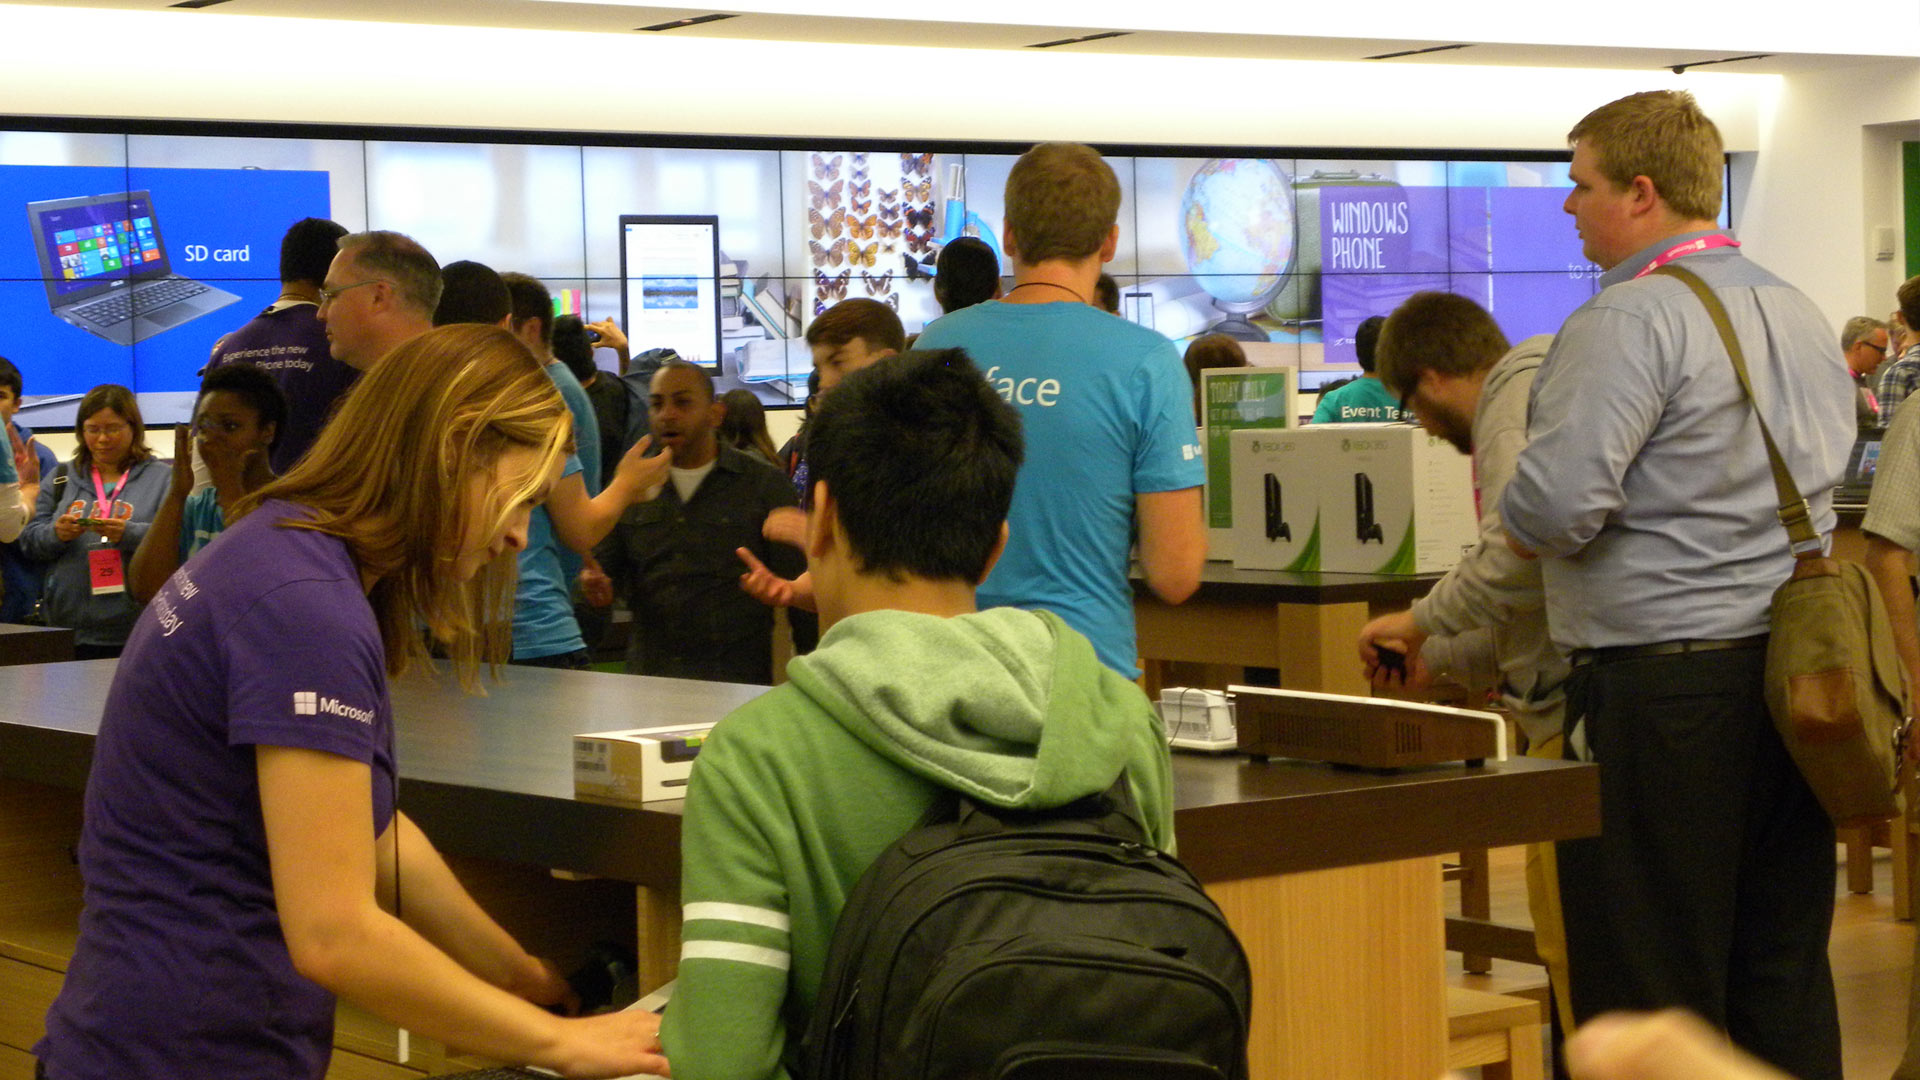 Calgary Microsoft Store Customers